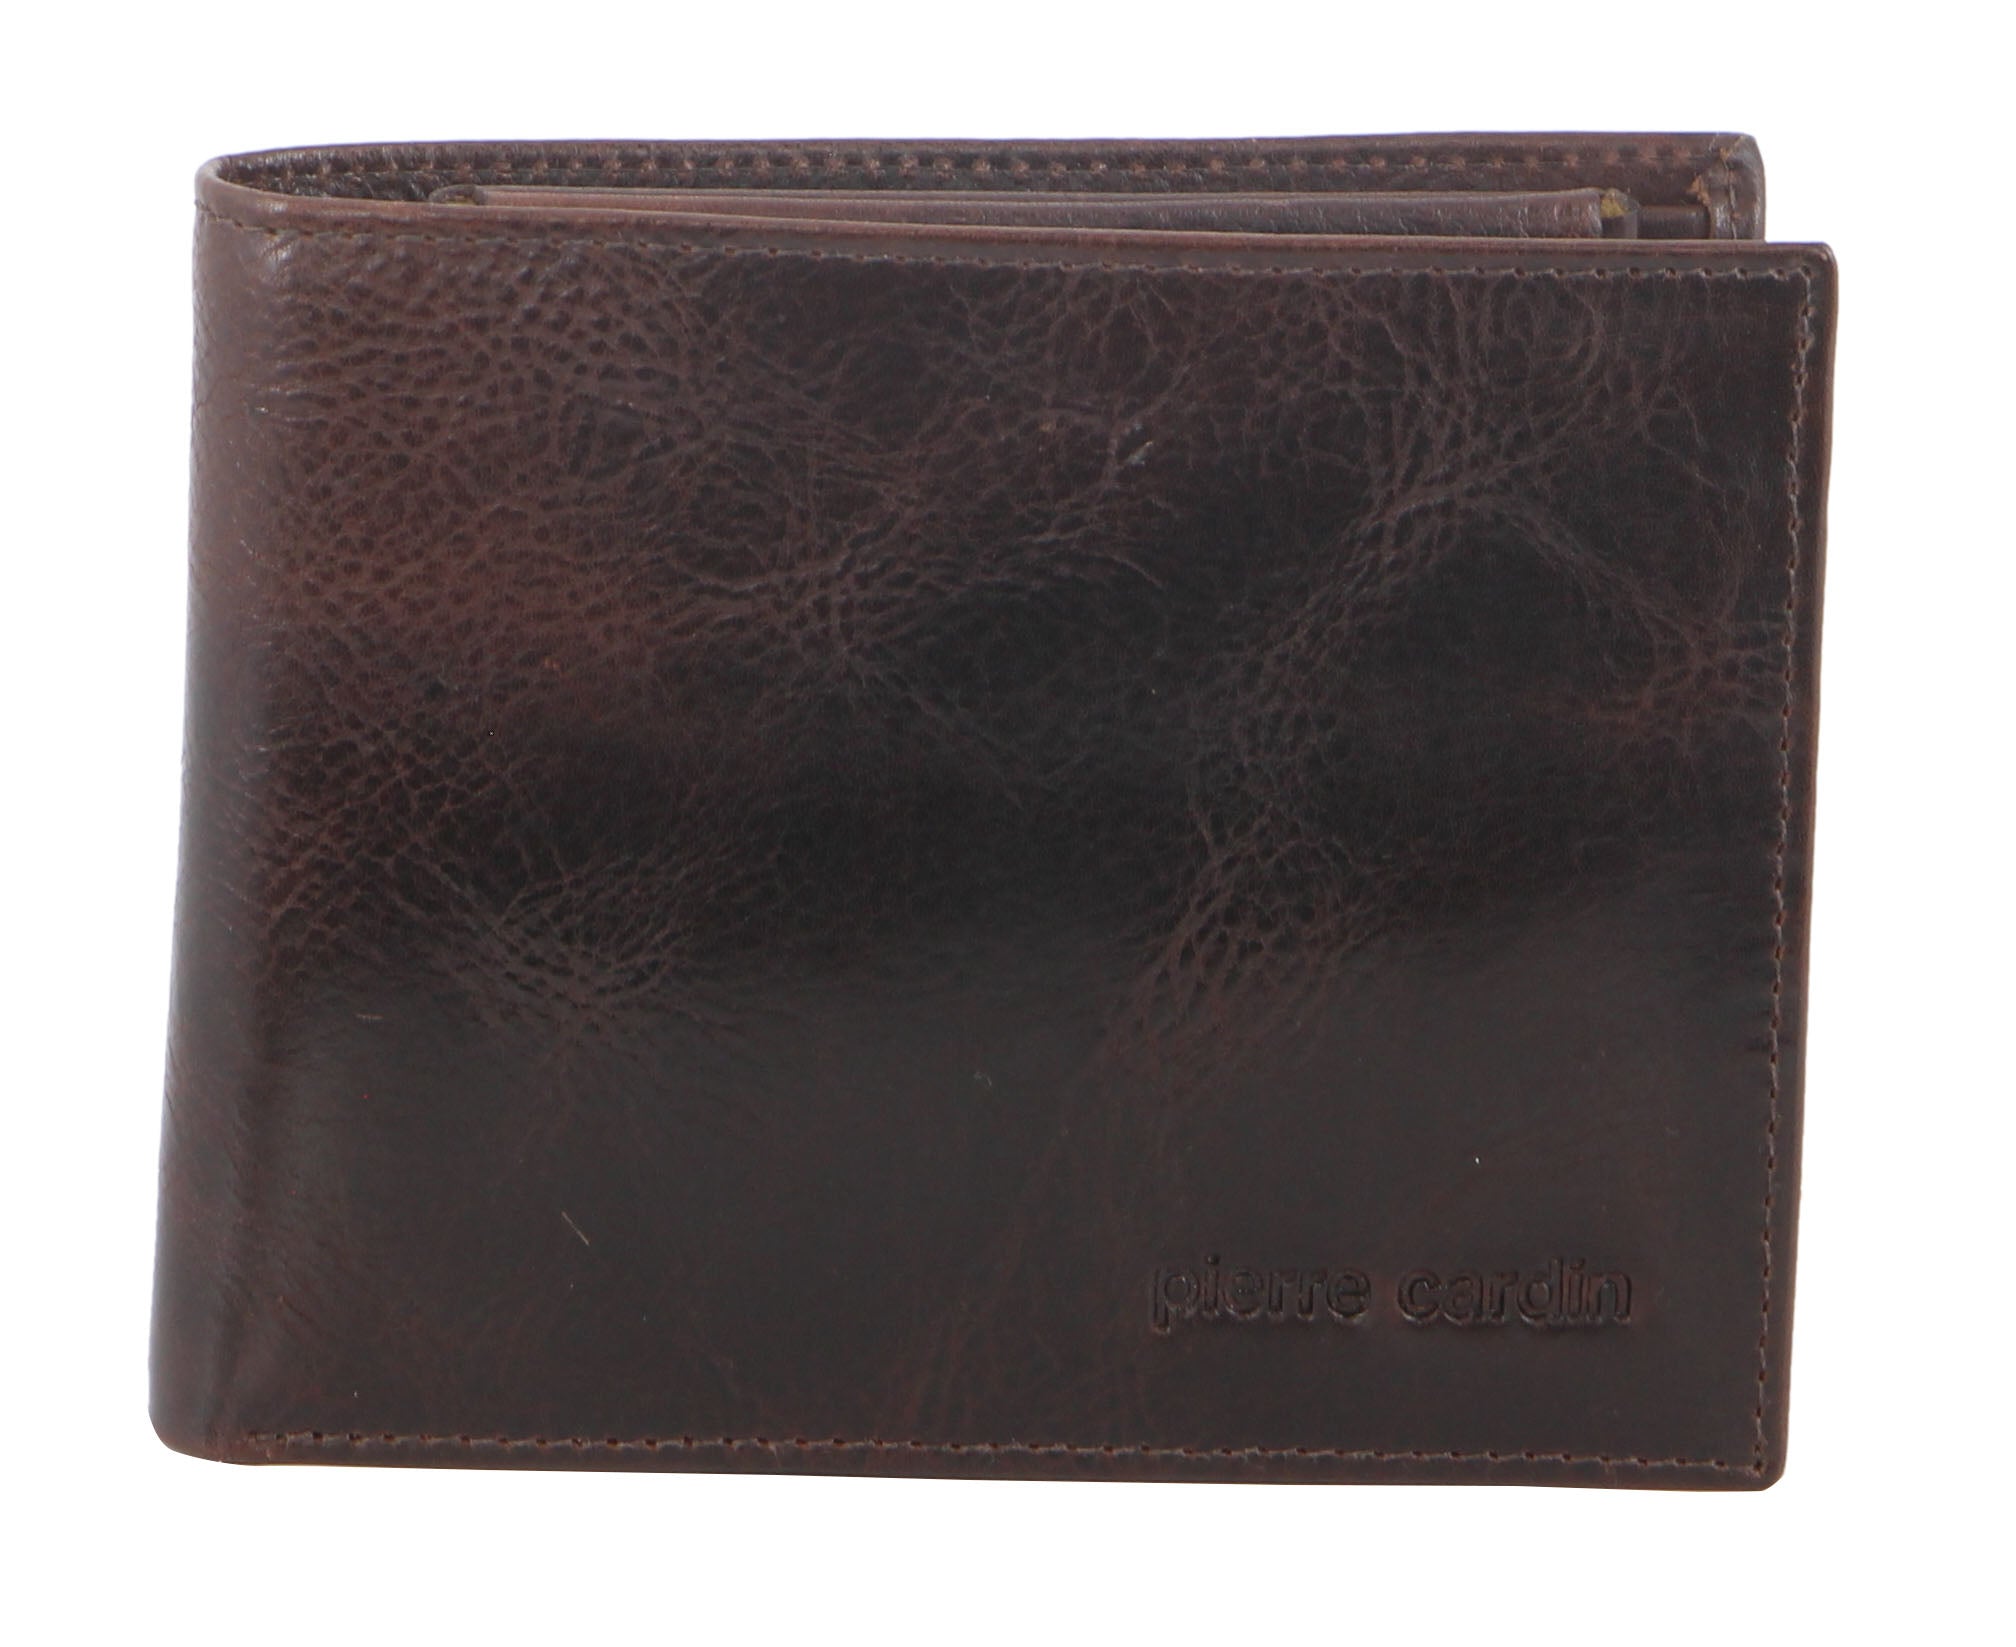 Pierre Cardin Italian Leather Men's Wallet/Card Holder in Black